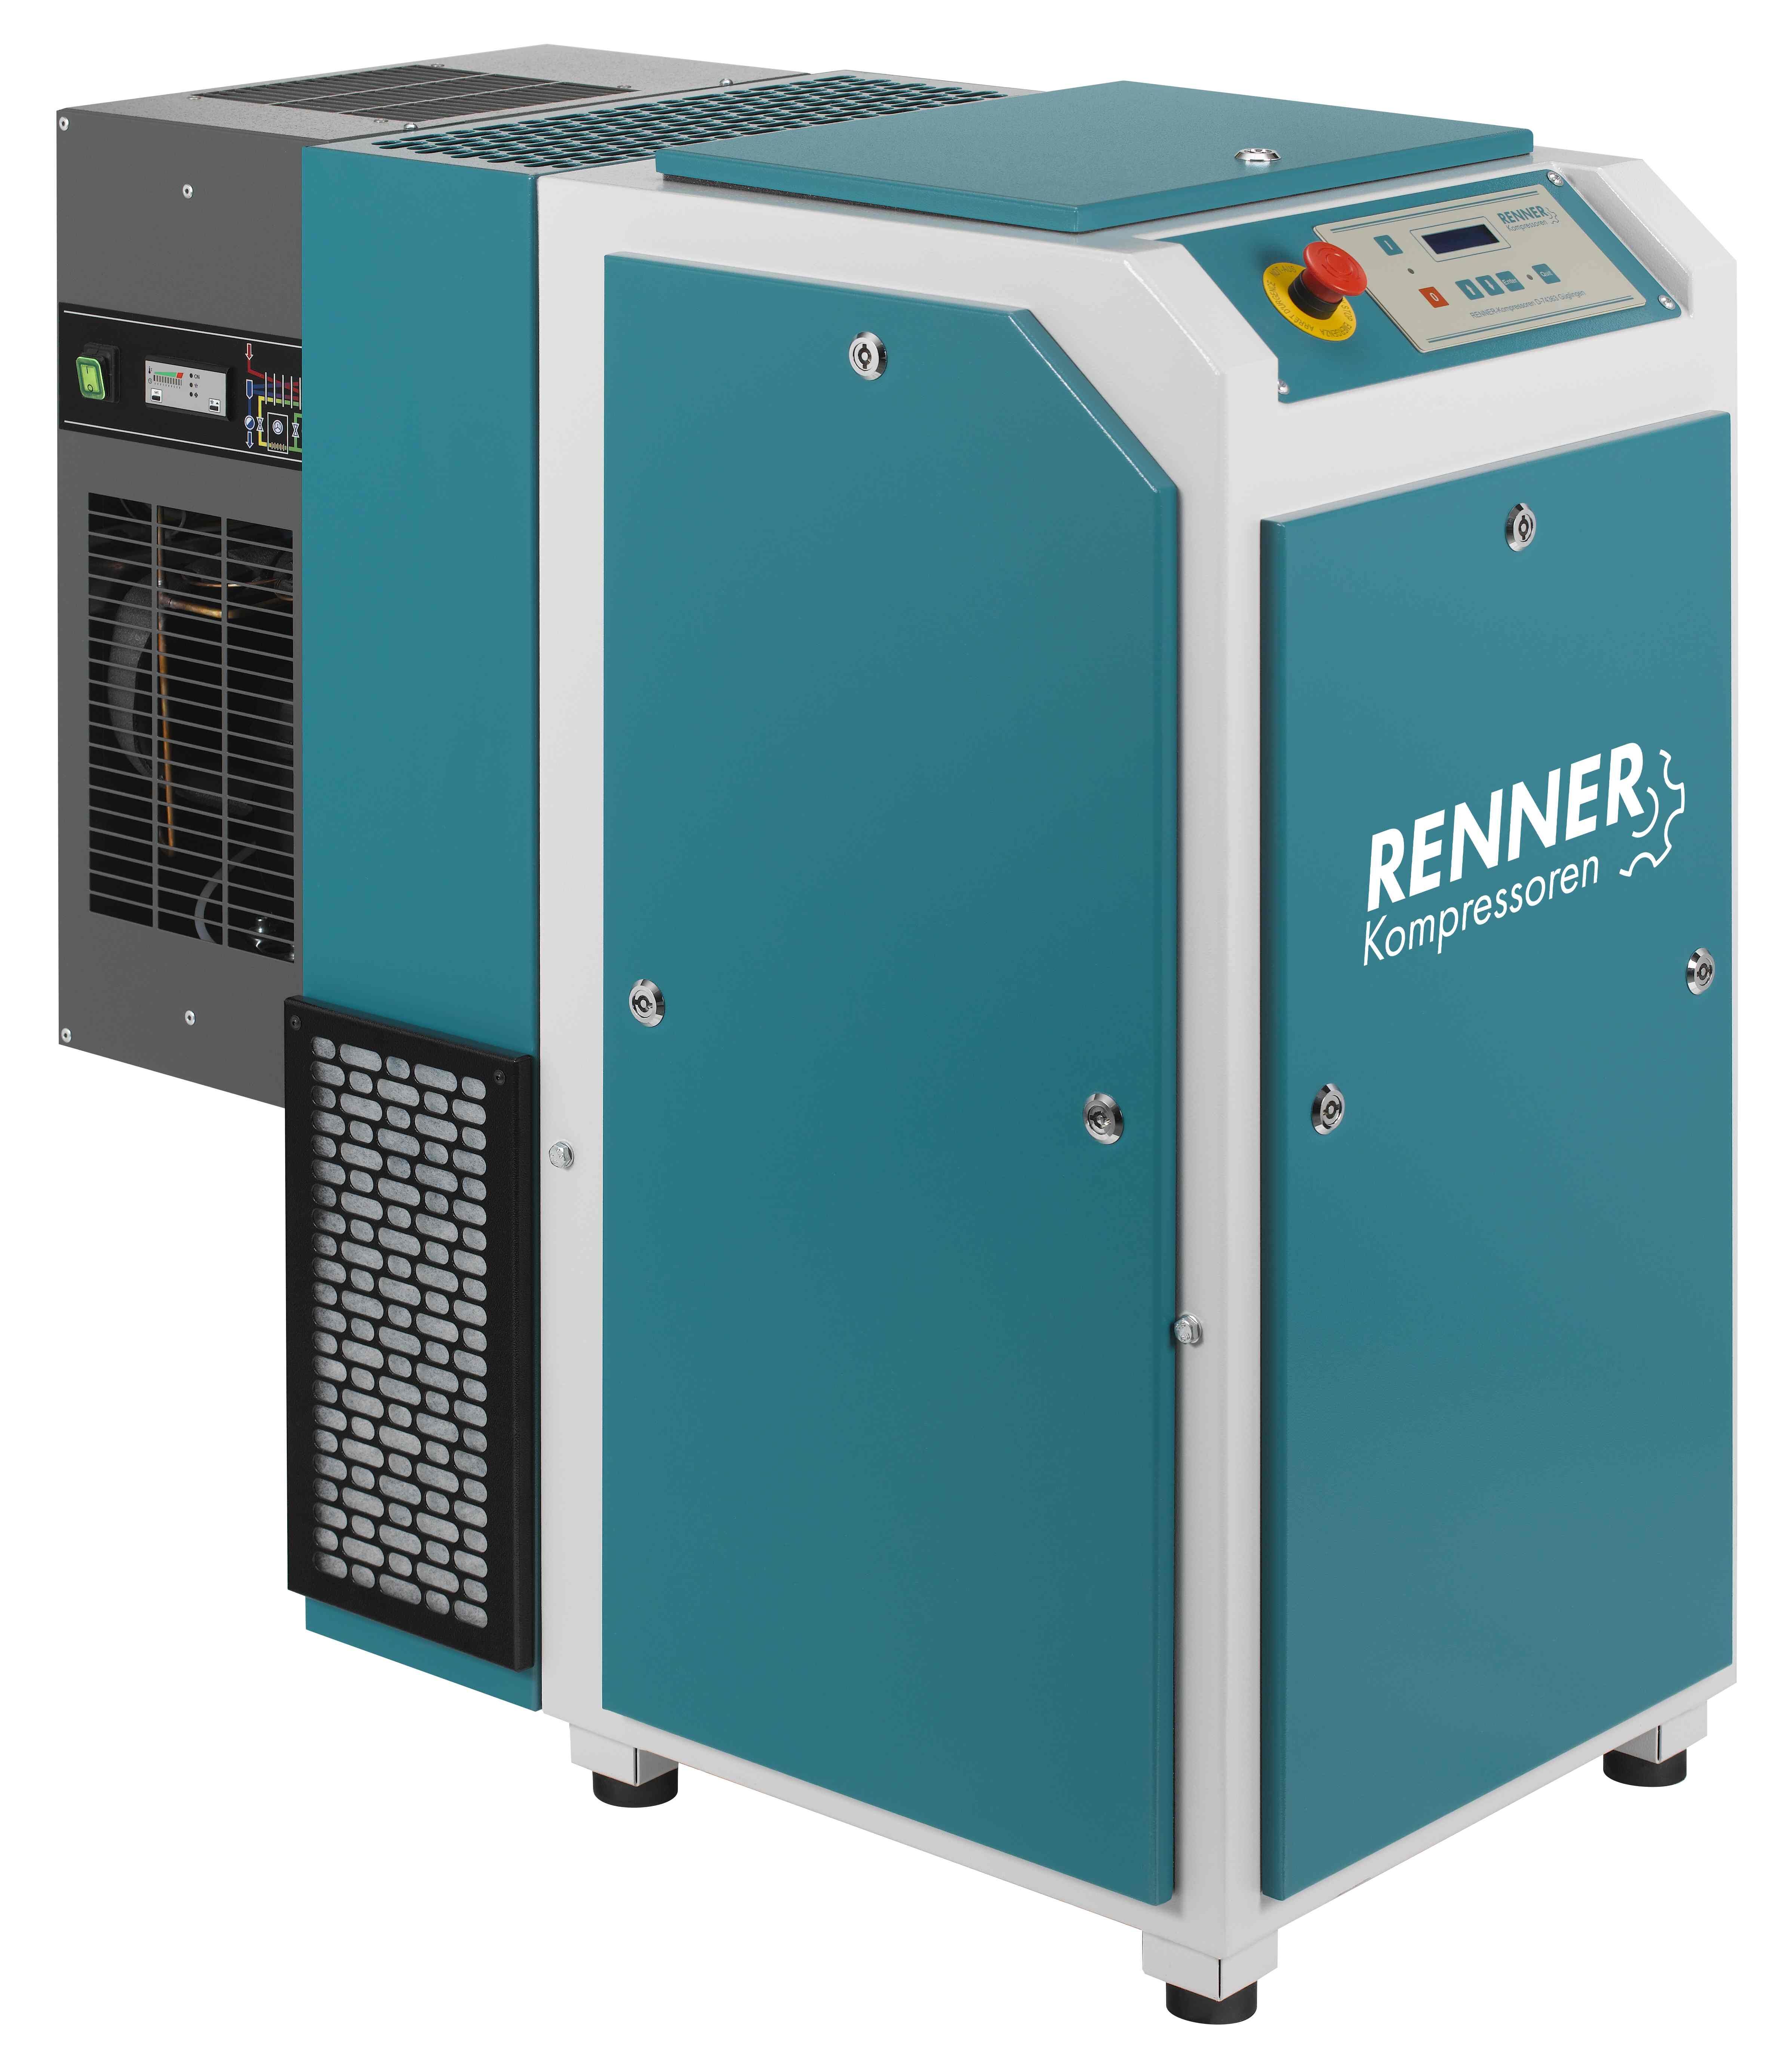 RENNER-Kompressor Modell RSK-PRO 2-11,0 Schraubenkompressor